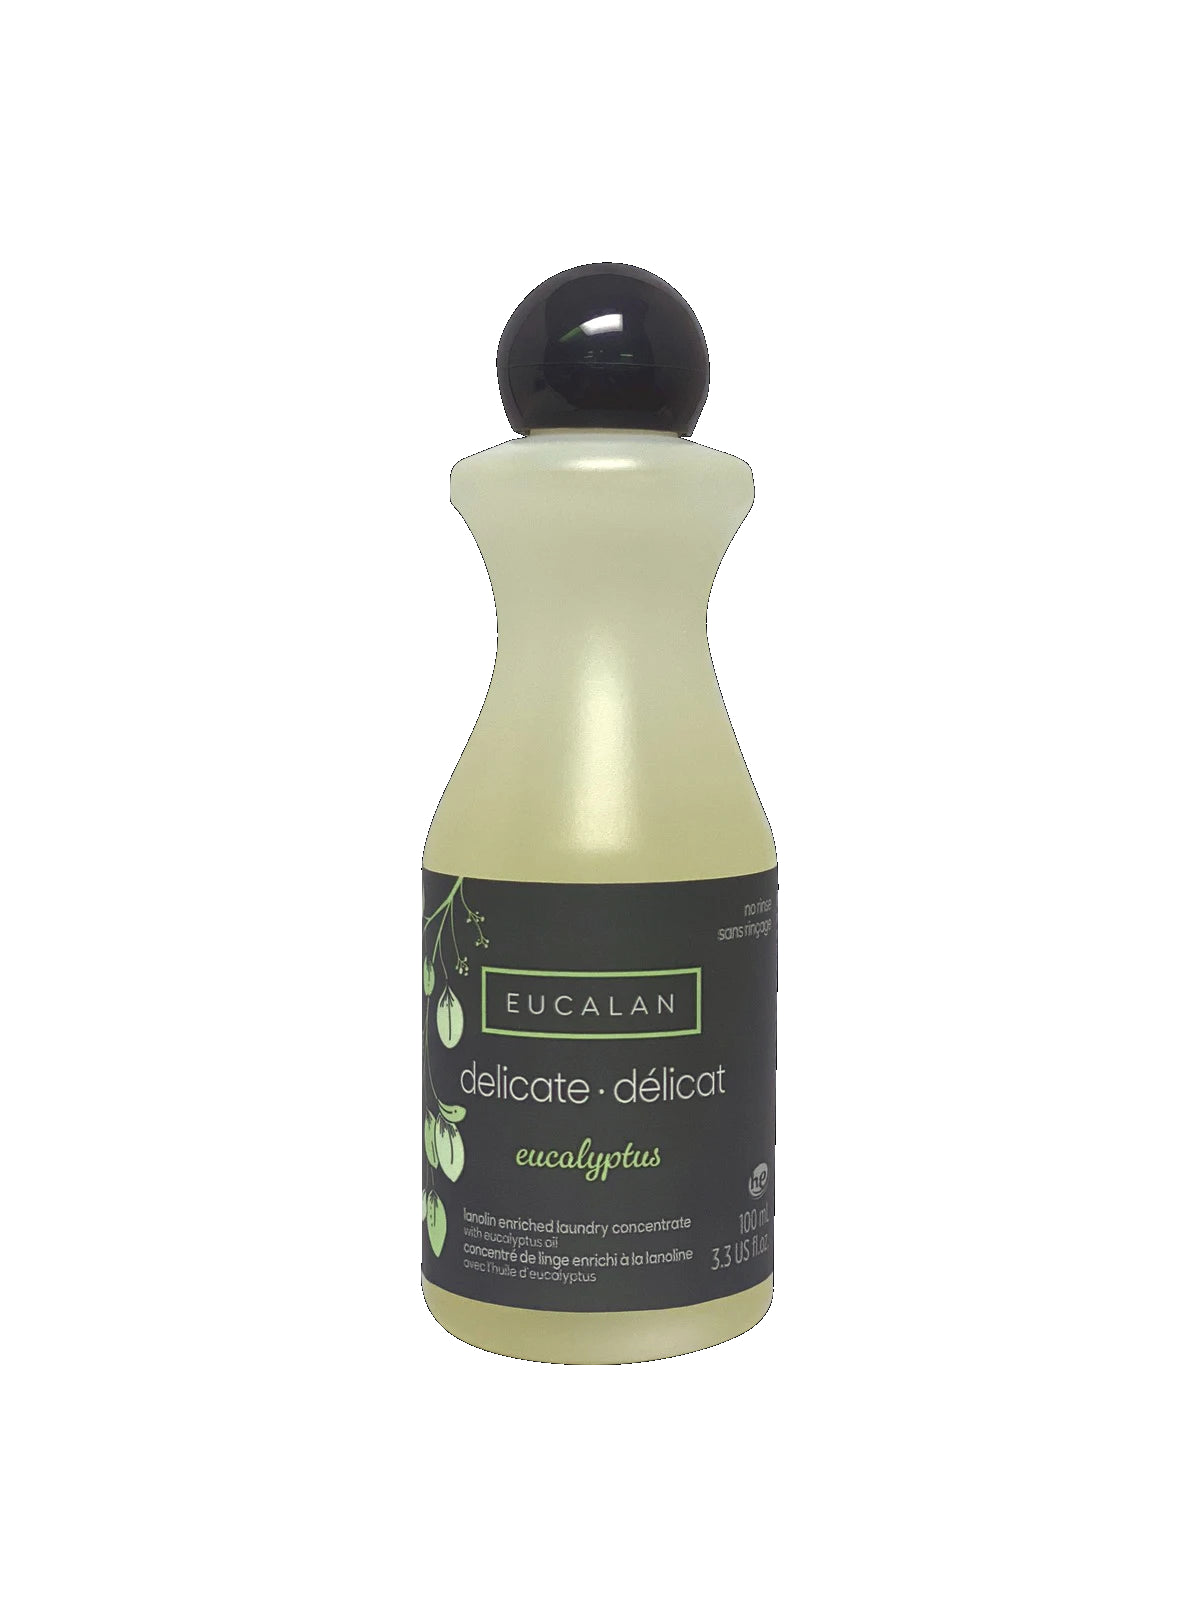 Eucalan - detergent delicat cu eucalipt - 100 ml